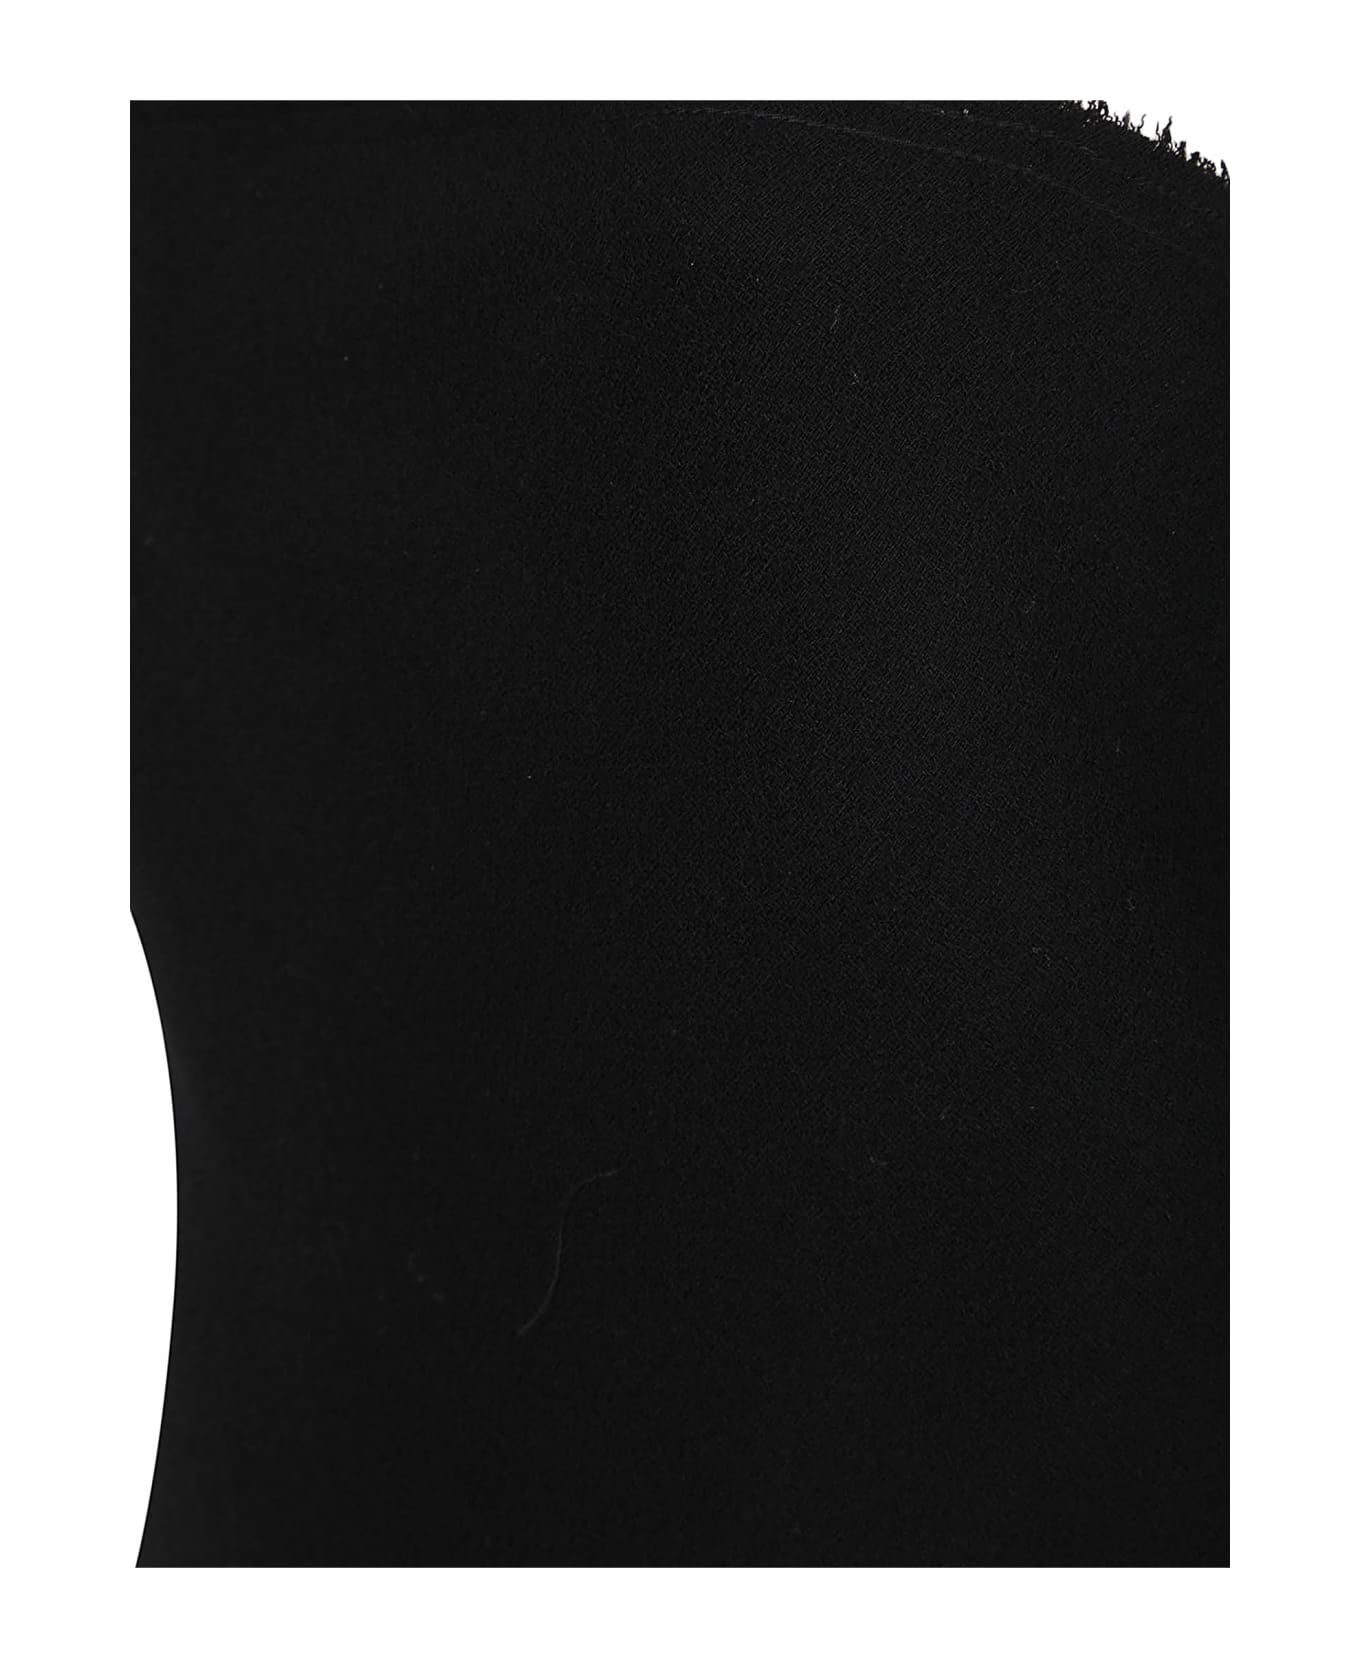 N.21 N°21 Dresses Black - Black